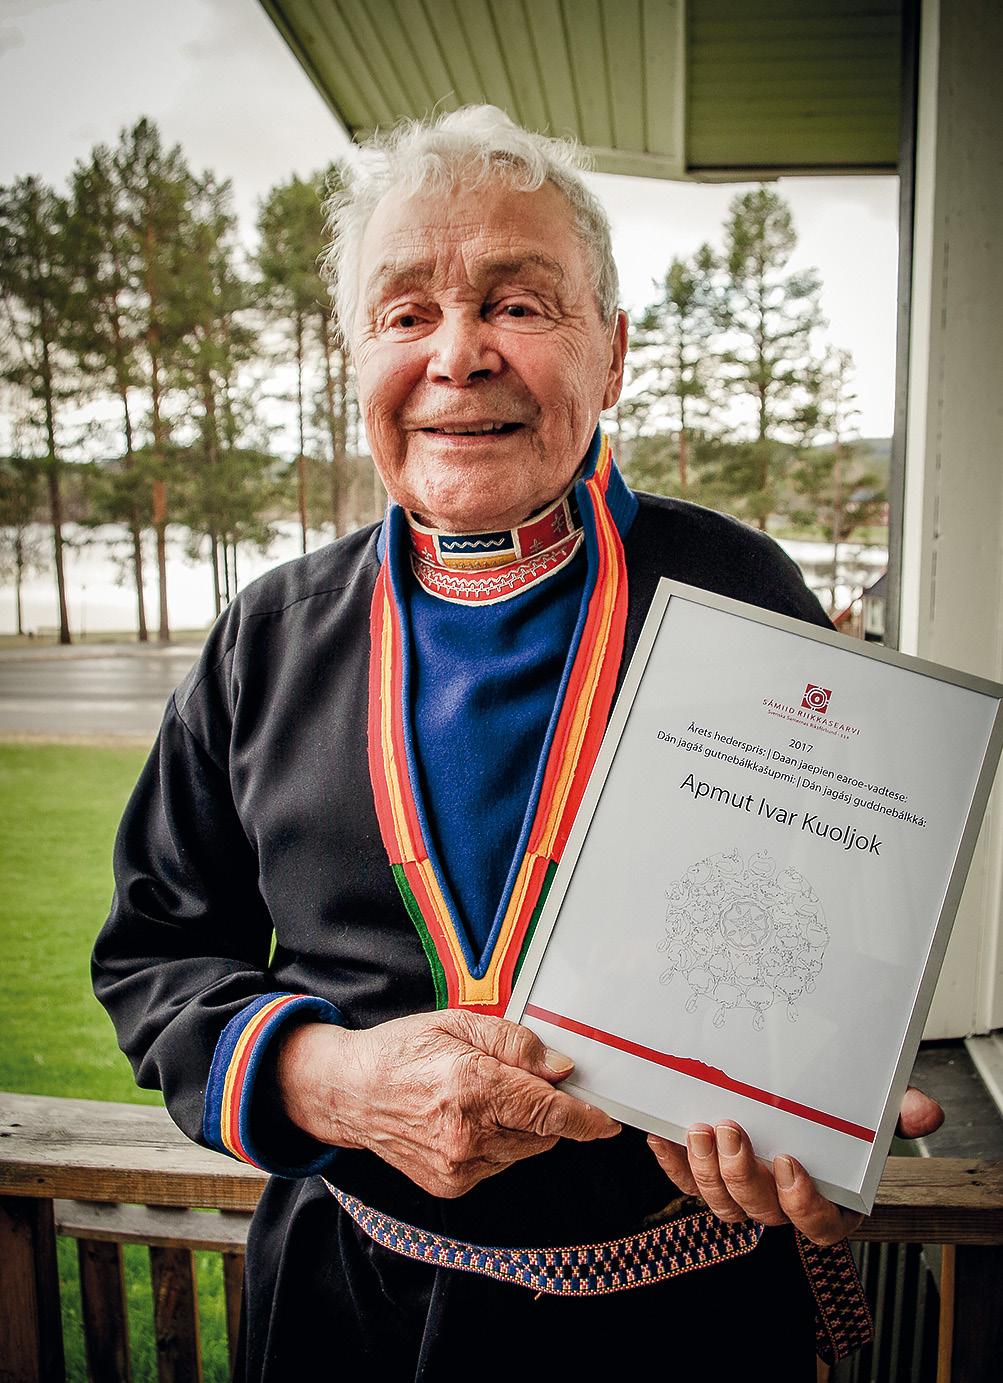 Apmut Ivar Kuoljok fick SSRs hederspris Renägaren Apmut Ivar Kuoljok tilldelas SSR:s hederspris 2017 för hans livslånga och förtjänstfulla gärningar inom renskötsel, språk, författande och